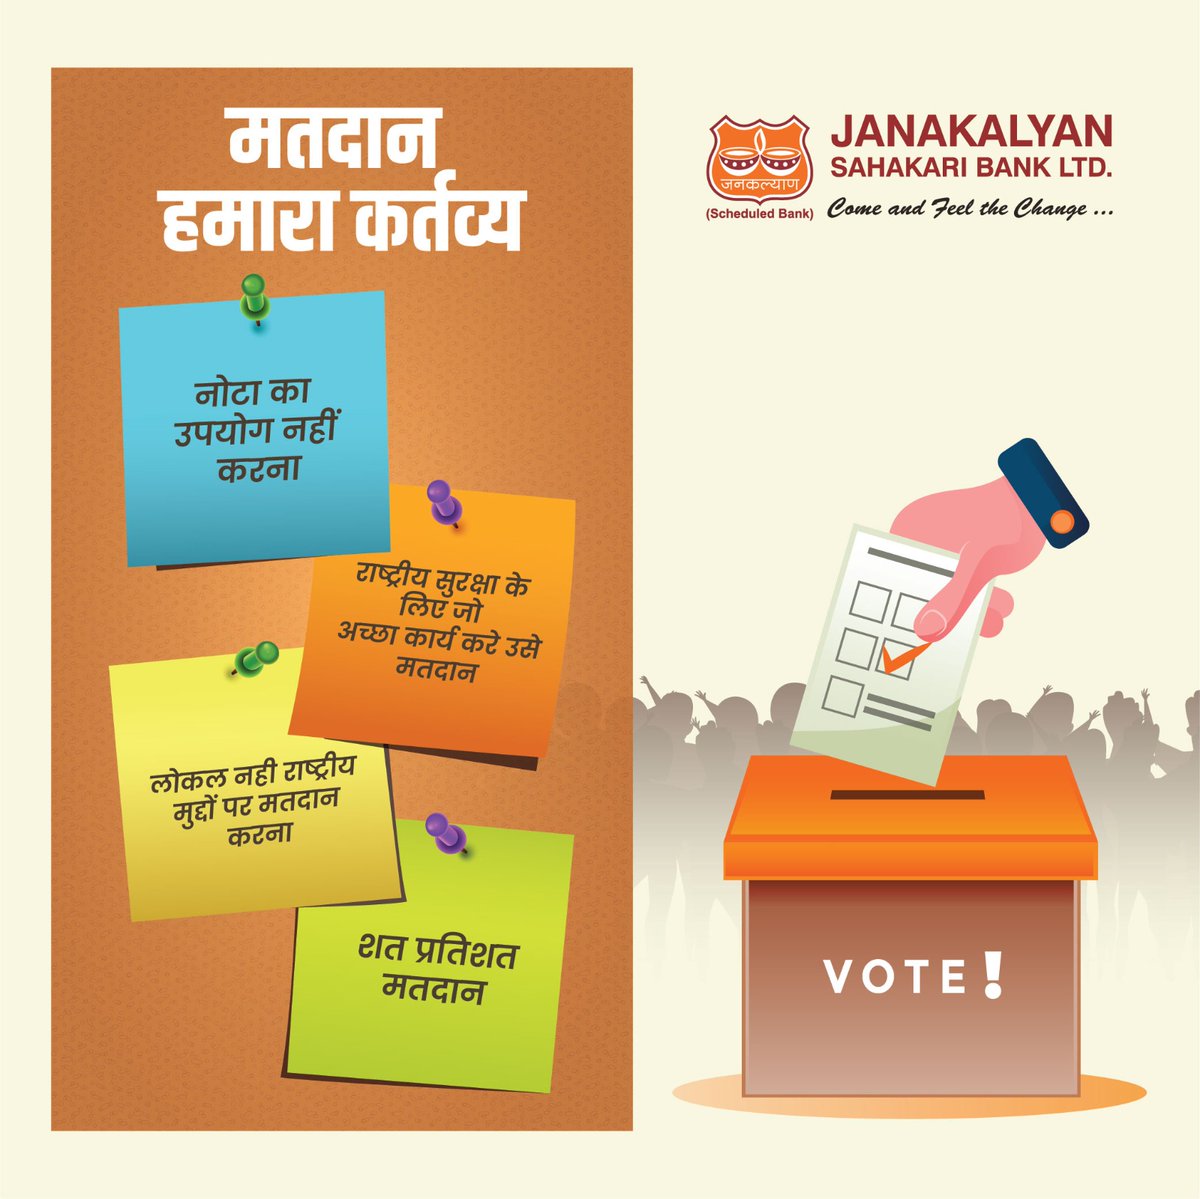 देश का भविष्य हमारे हाथों में है। वोट का महत्व समझें, वोट करें।

#vote #voting #LokSabhaElections #Elections2024 #JanakalyanSahakariBank #JSBLBANK